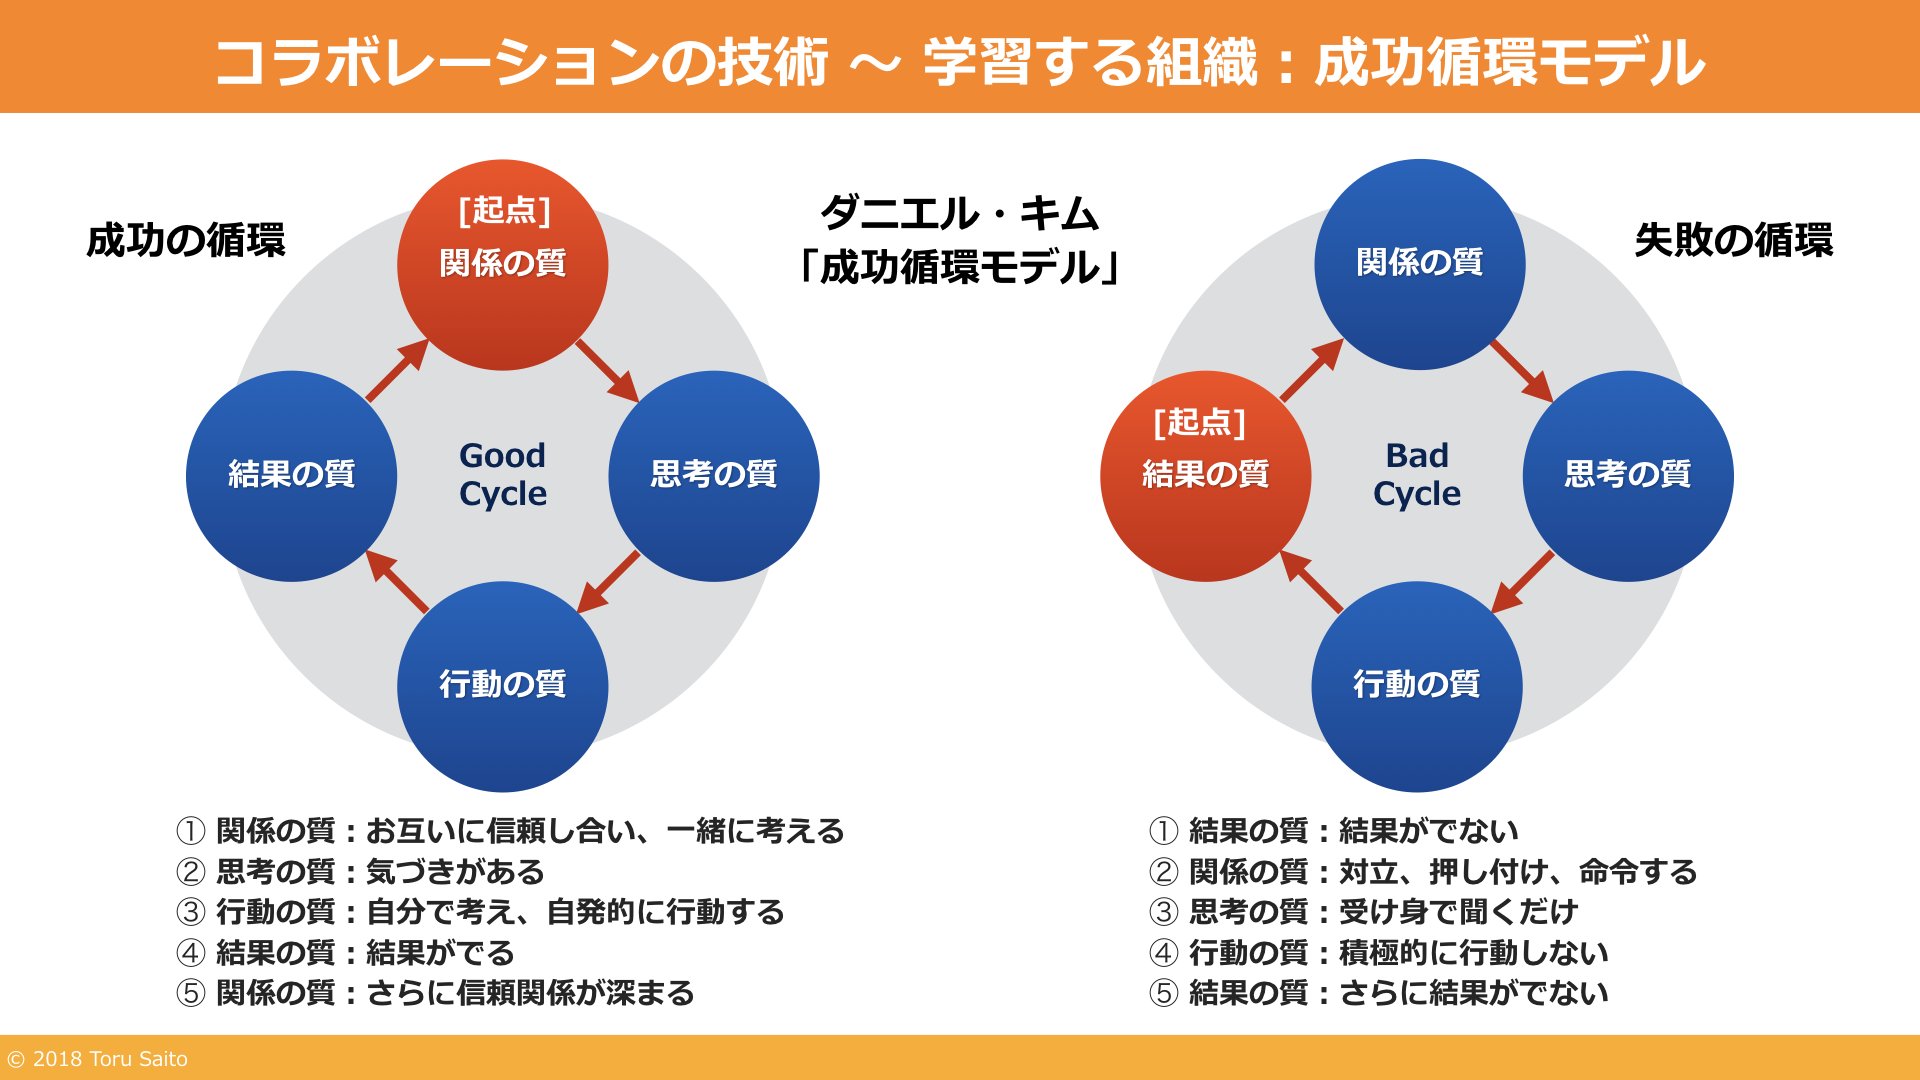 斉藤 徹 Twitterissa 学習院のソーシャルキャピタル講義 学習する組織 成功循環モデル の授業スライドを公開します 成功循環モデルは システム思考でマネジメントを捉えた とてもシンプルで明解なモデル 提唱者はピーター センゲ氏とともに組織開発を行って